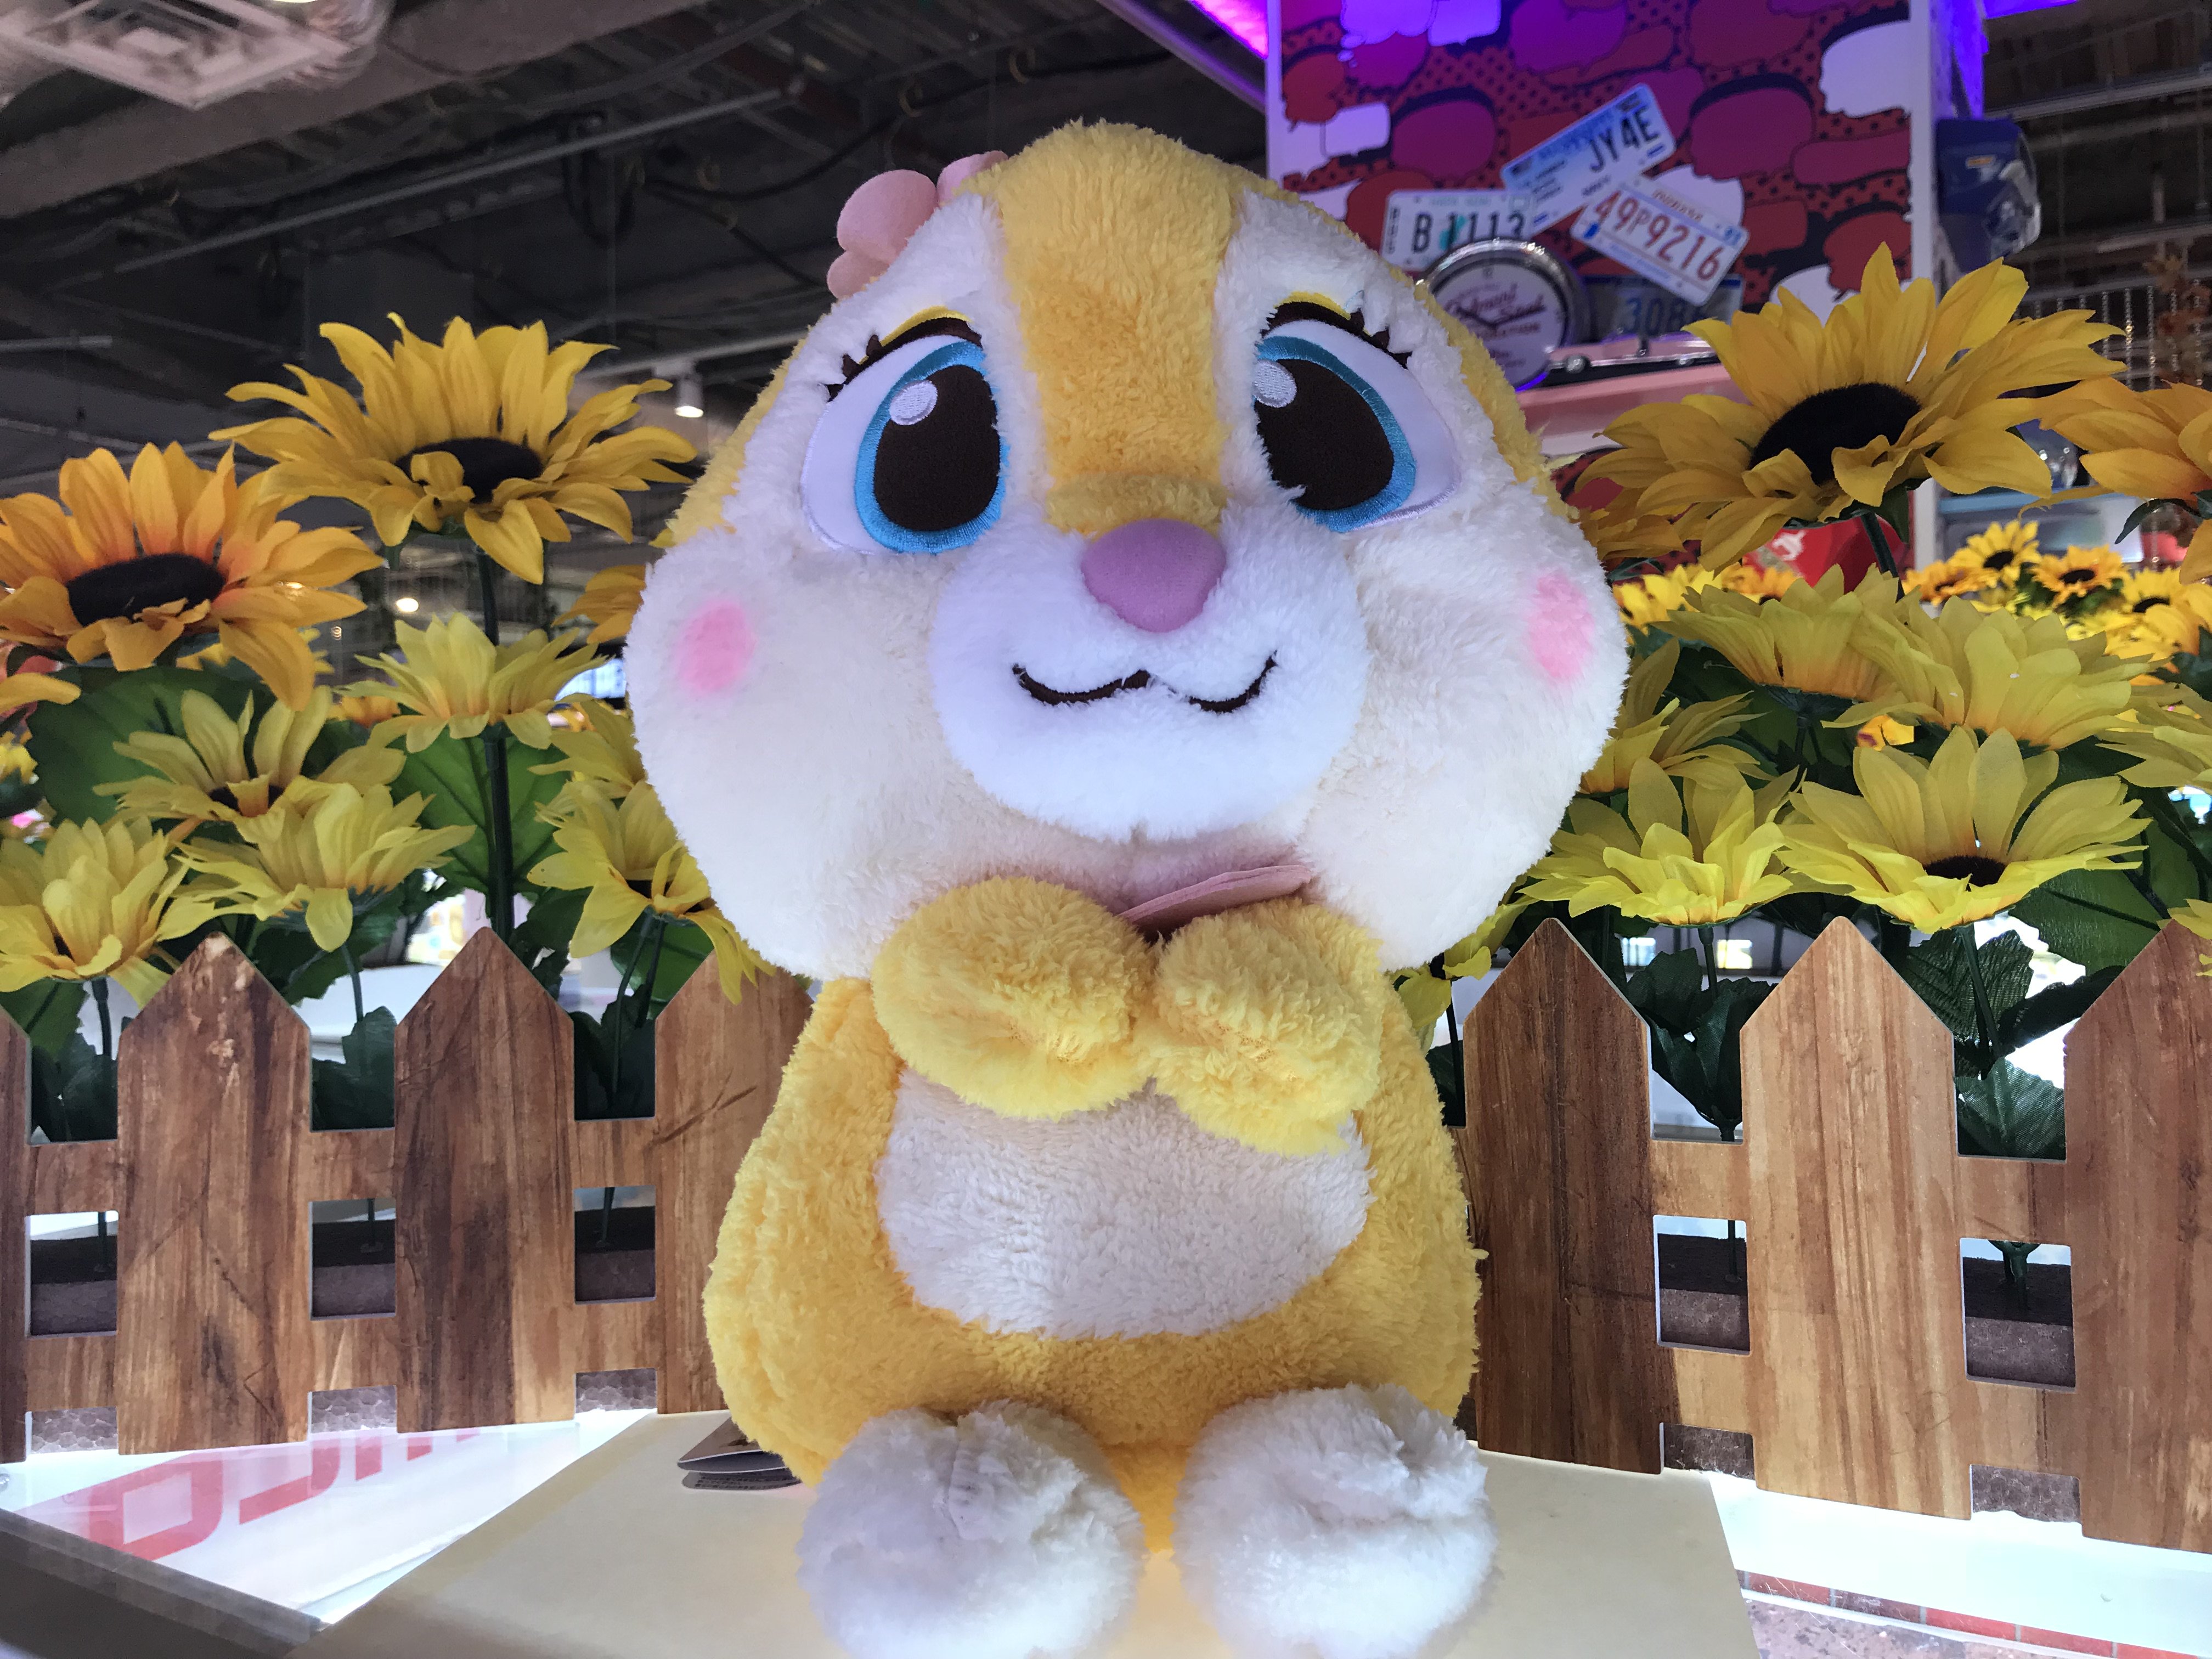 טוויטר Namco横浜ワールドポーターズ店 בטוויטר 本日miss Bunny Youメガジャンボぬいぐるみが本日投入されました バニーちゃんの Youシリーズ 頭にはちゃんとお花も付いていてもこもこで可愛いです 皆様ぜひ お迎えしてあげてくださいね Disney